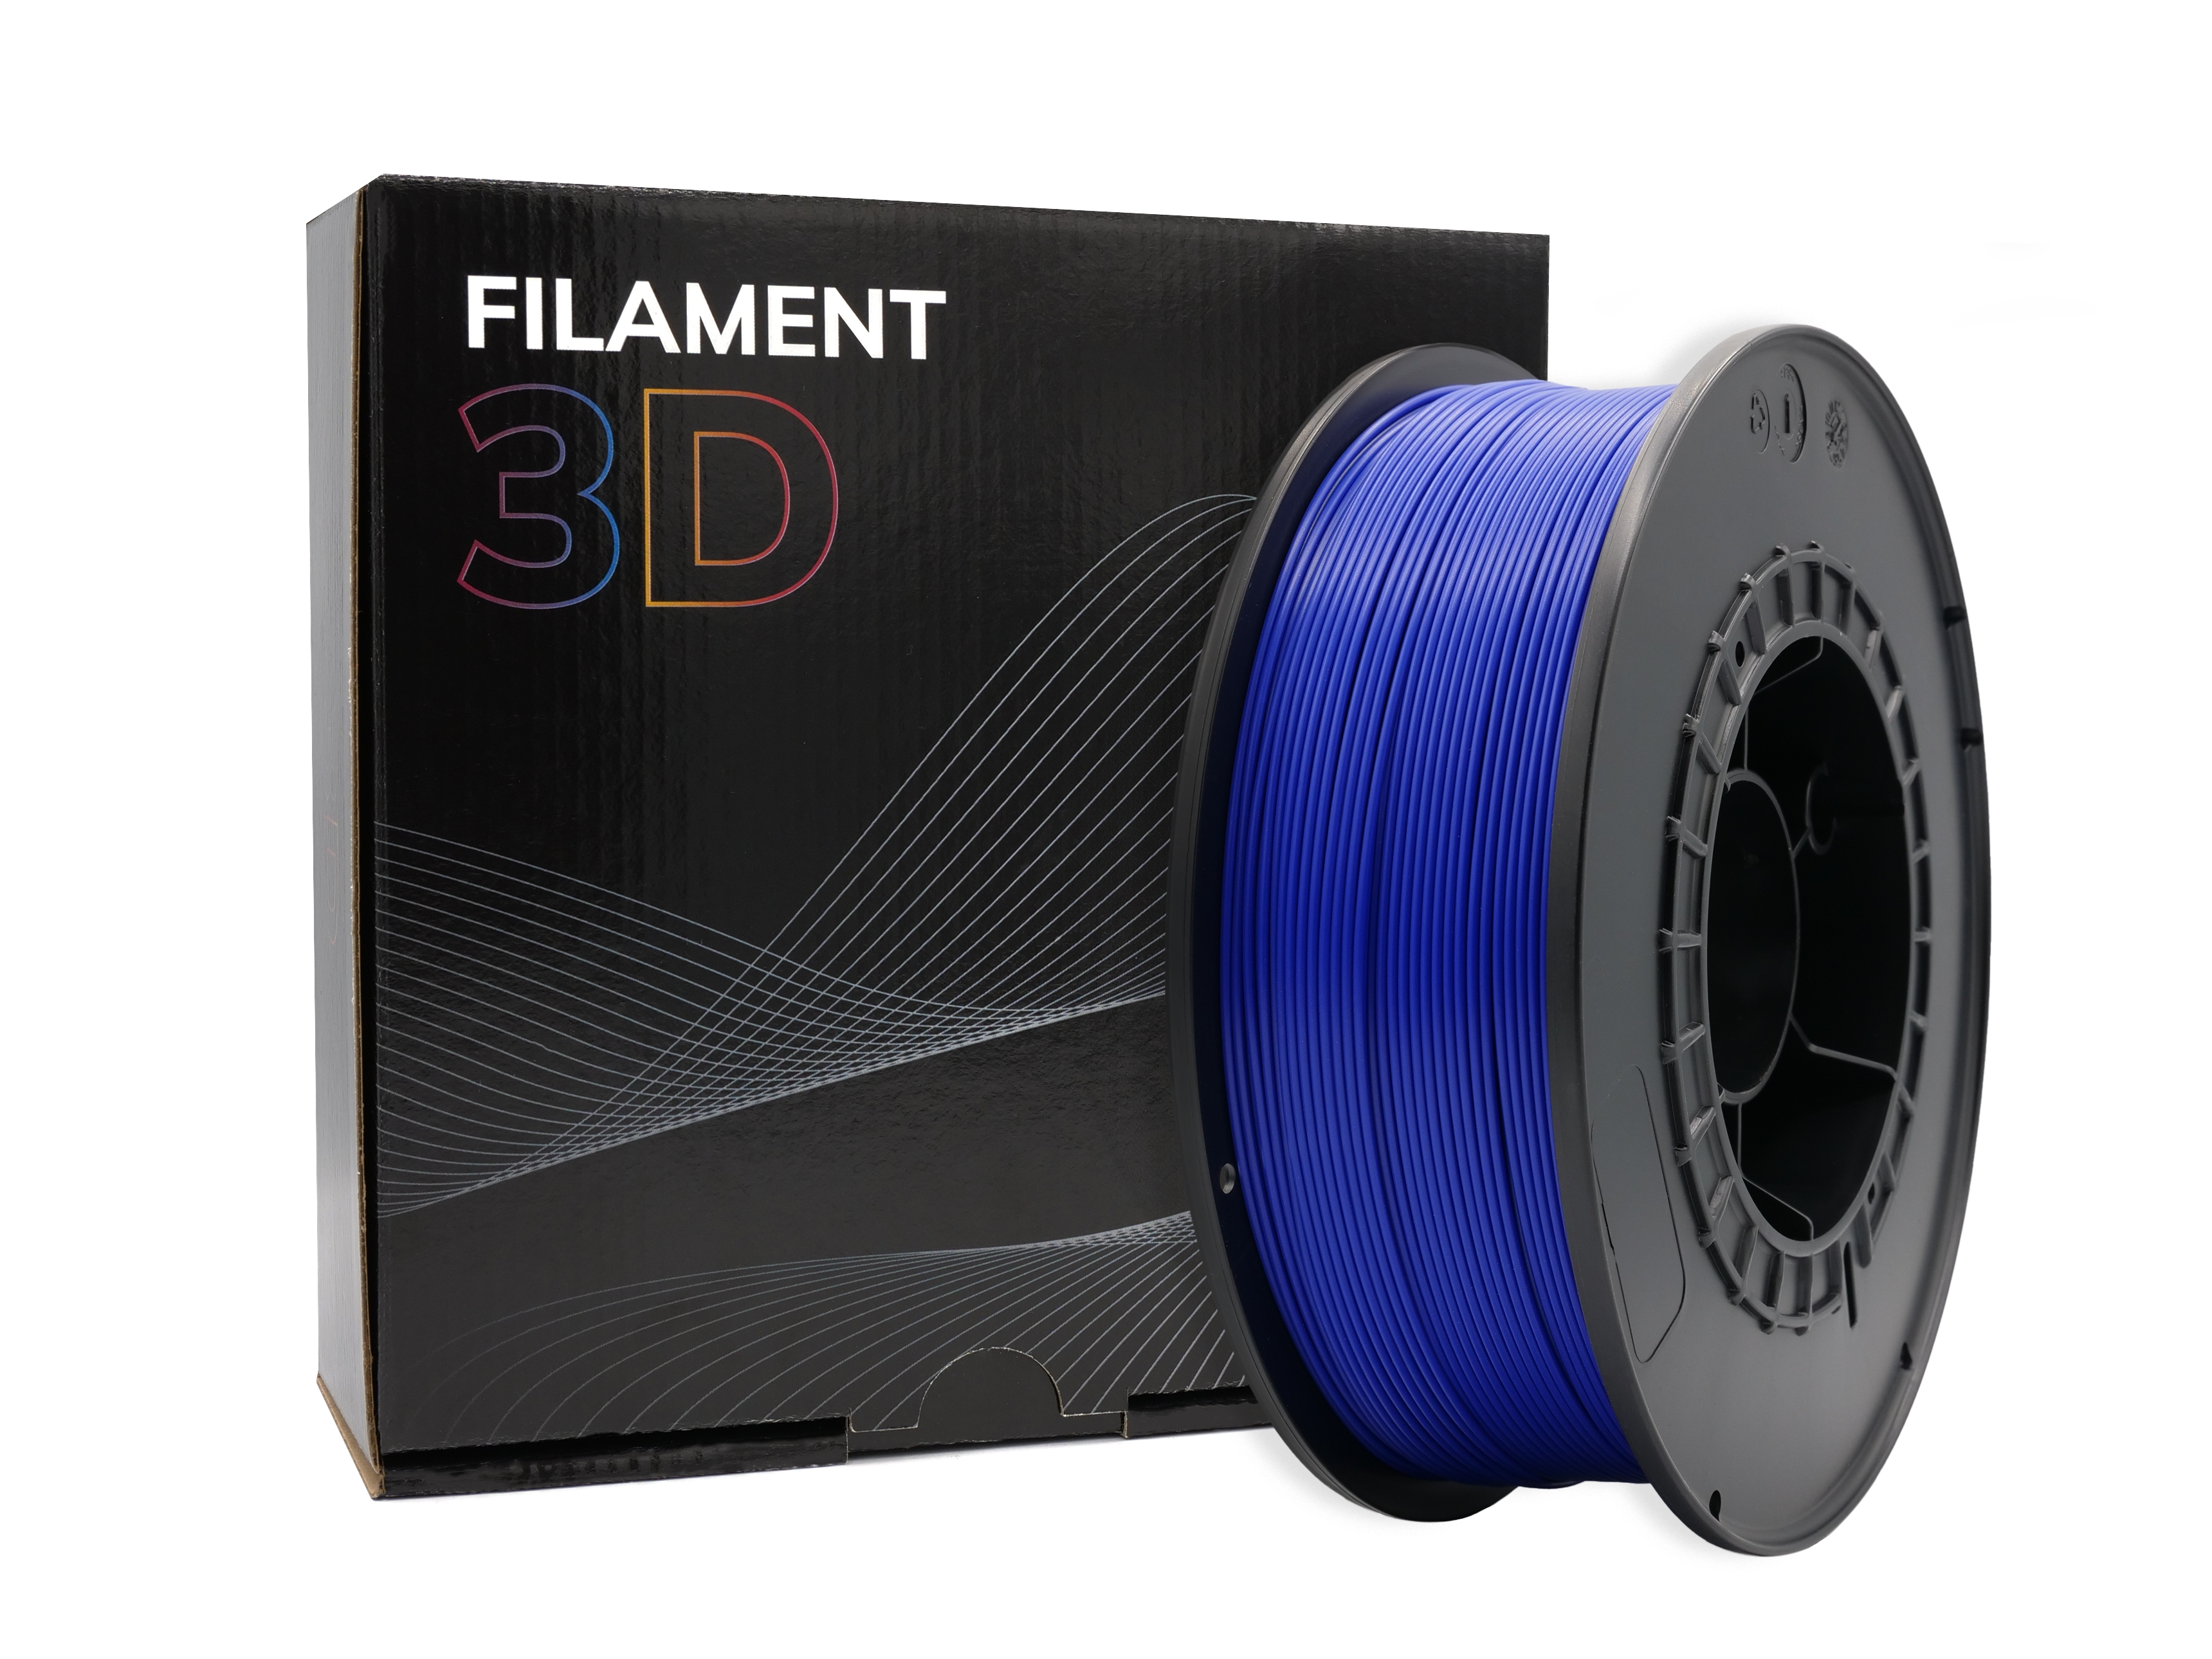 Filament vert nuit 1.75mm, filament d'imprimante 3d 1kg pour imprimante 3d